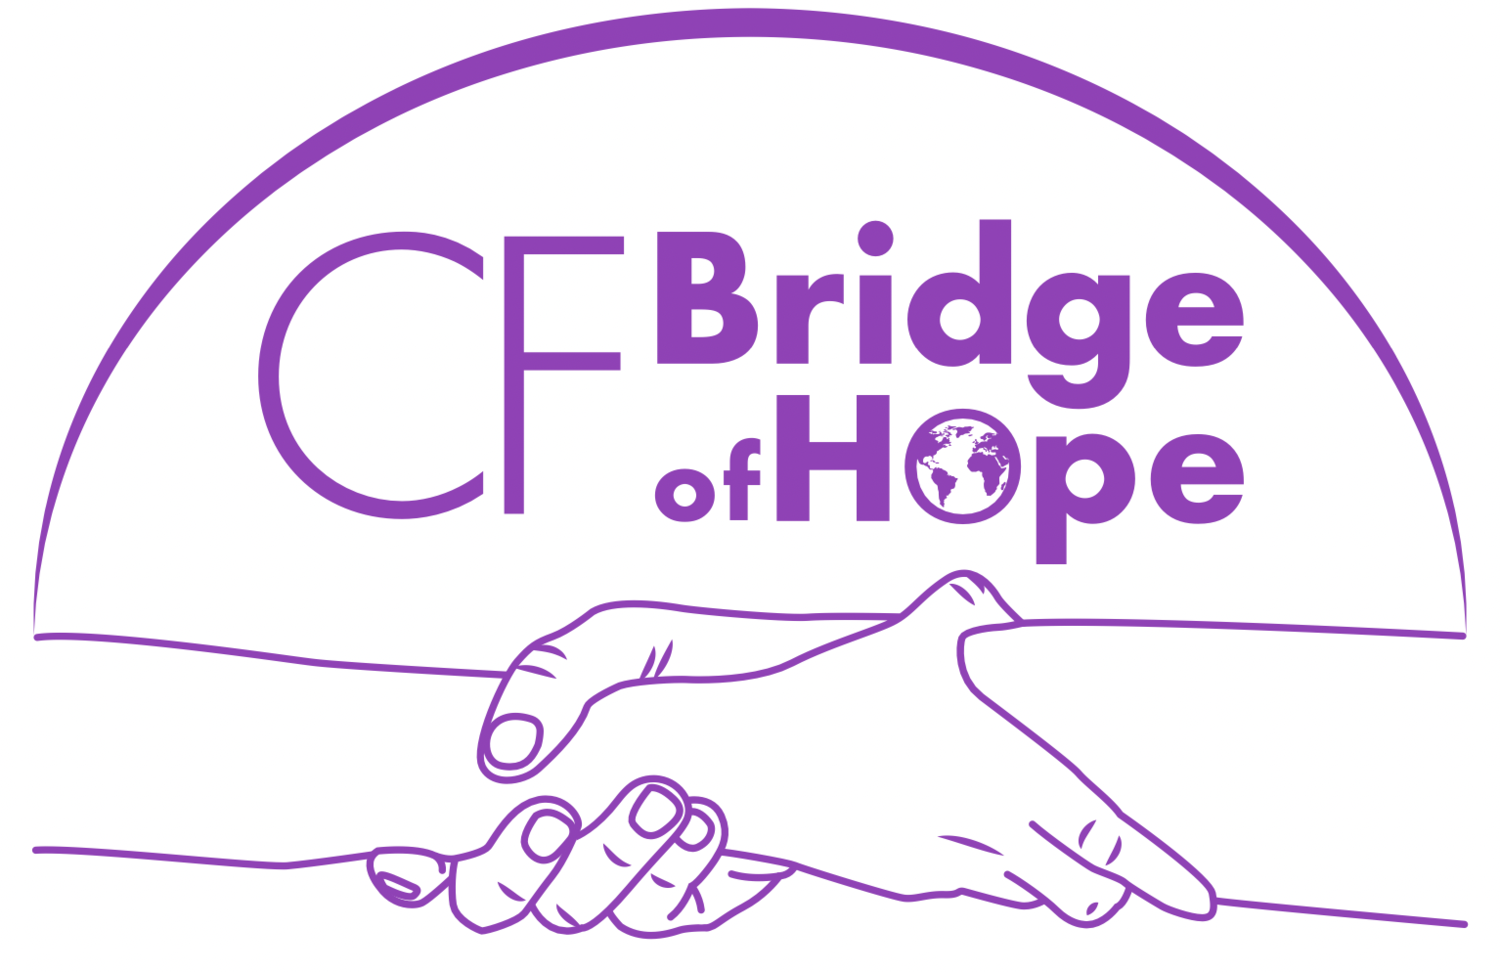 CF Bridge of Hope